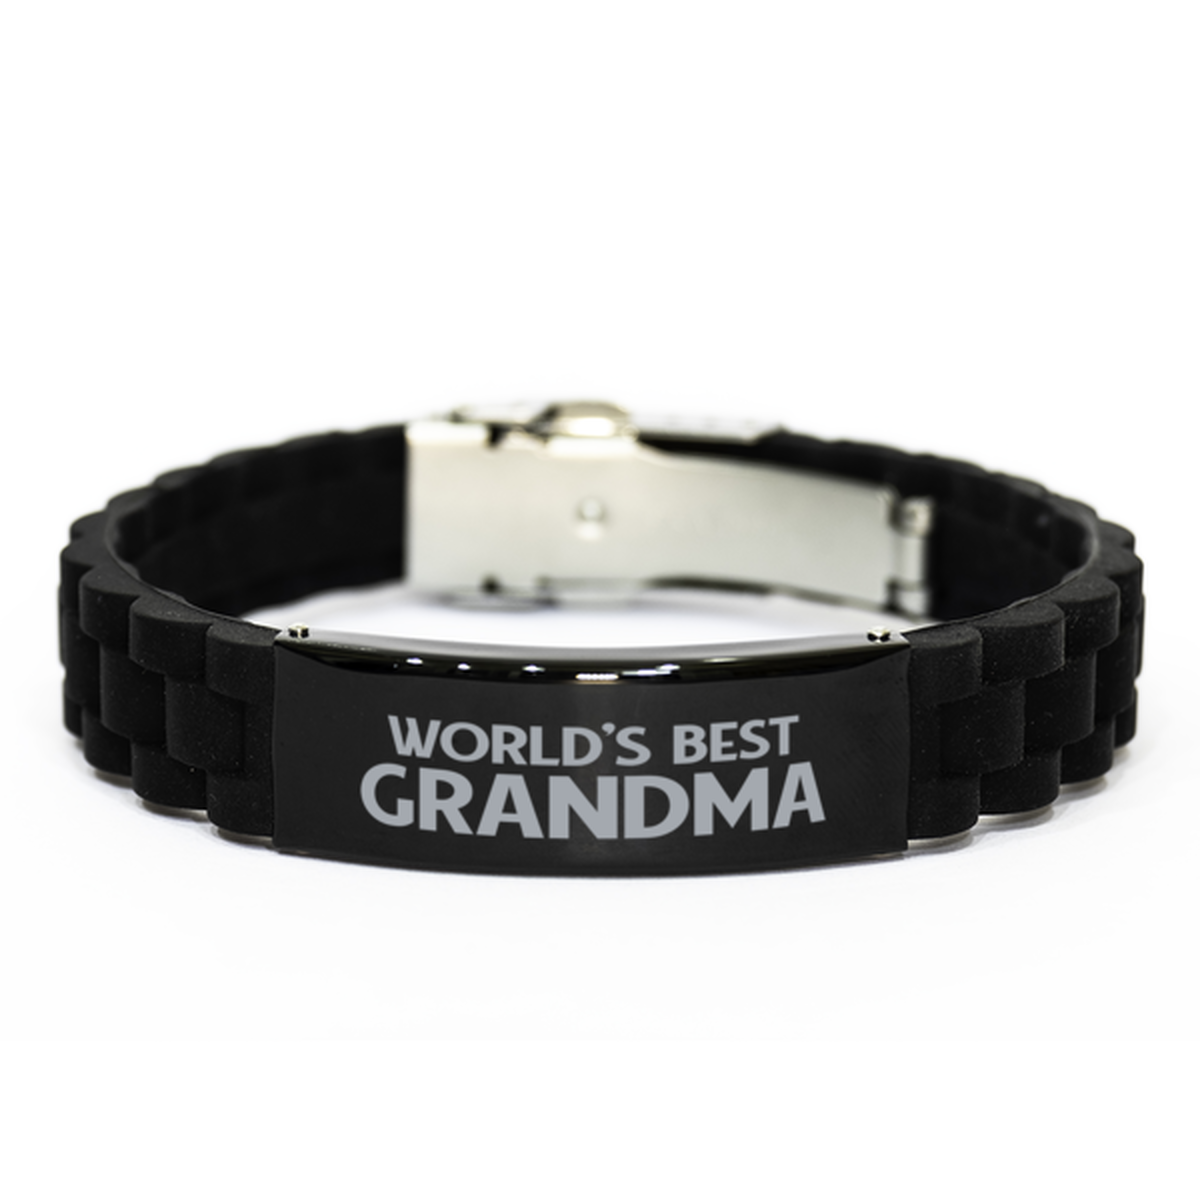 World's Best Grandma Gifts, Funny Black Engraved Bracelet For Grandma, Family Gifts For Women